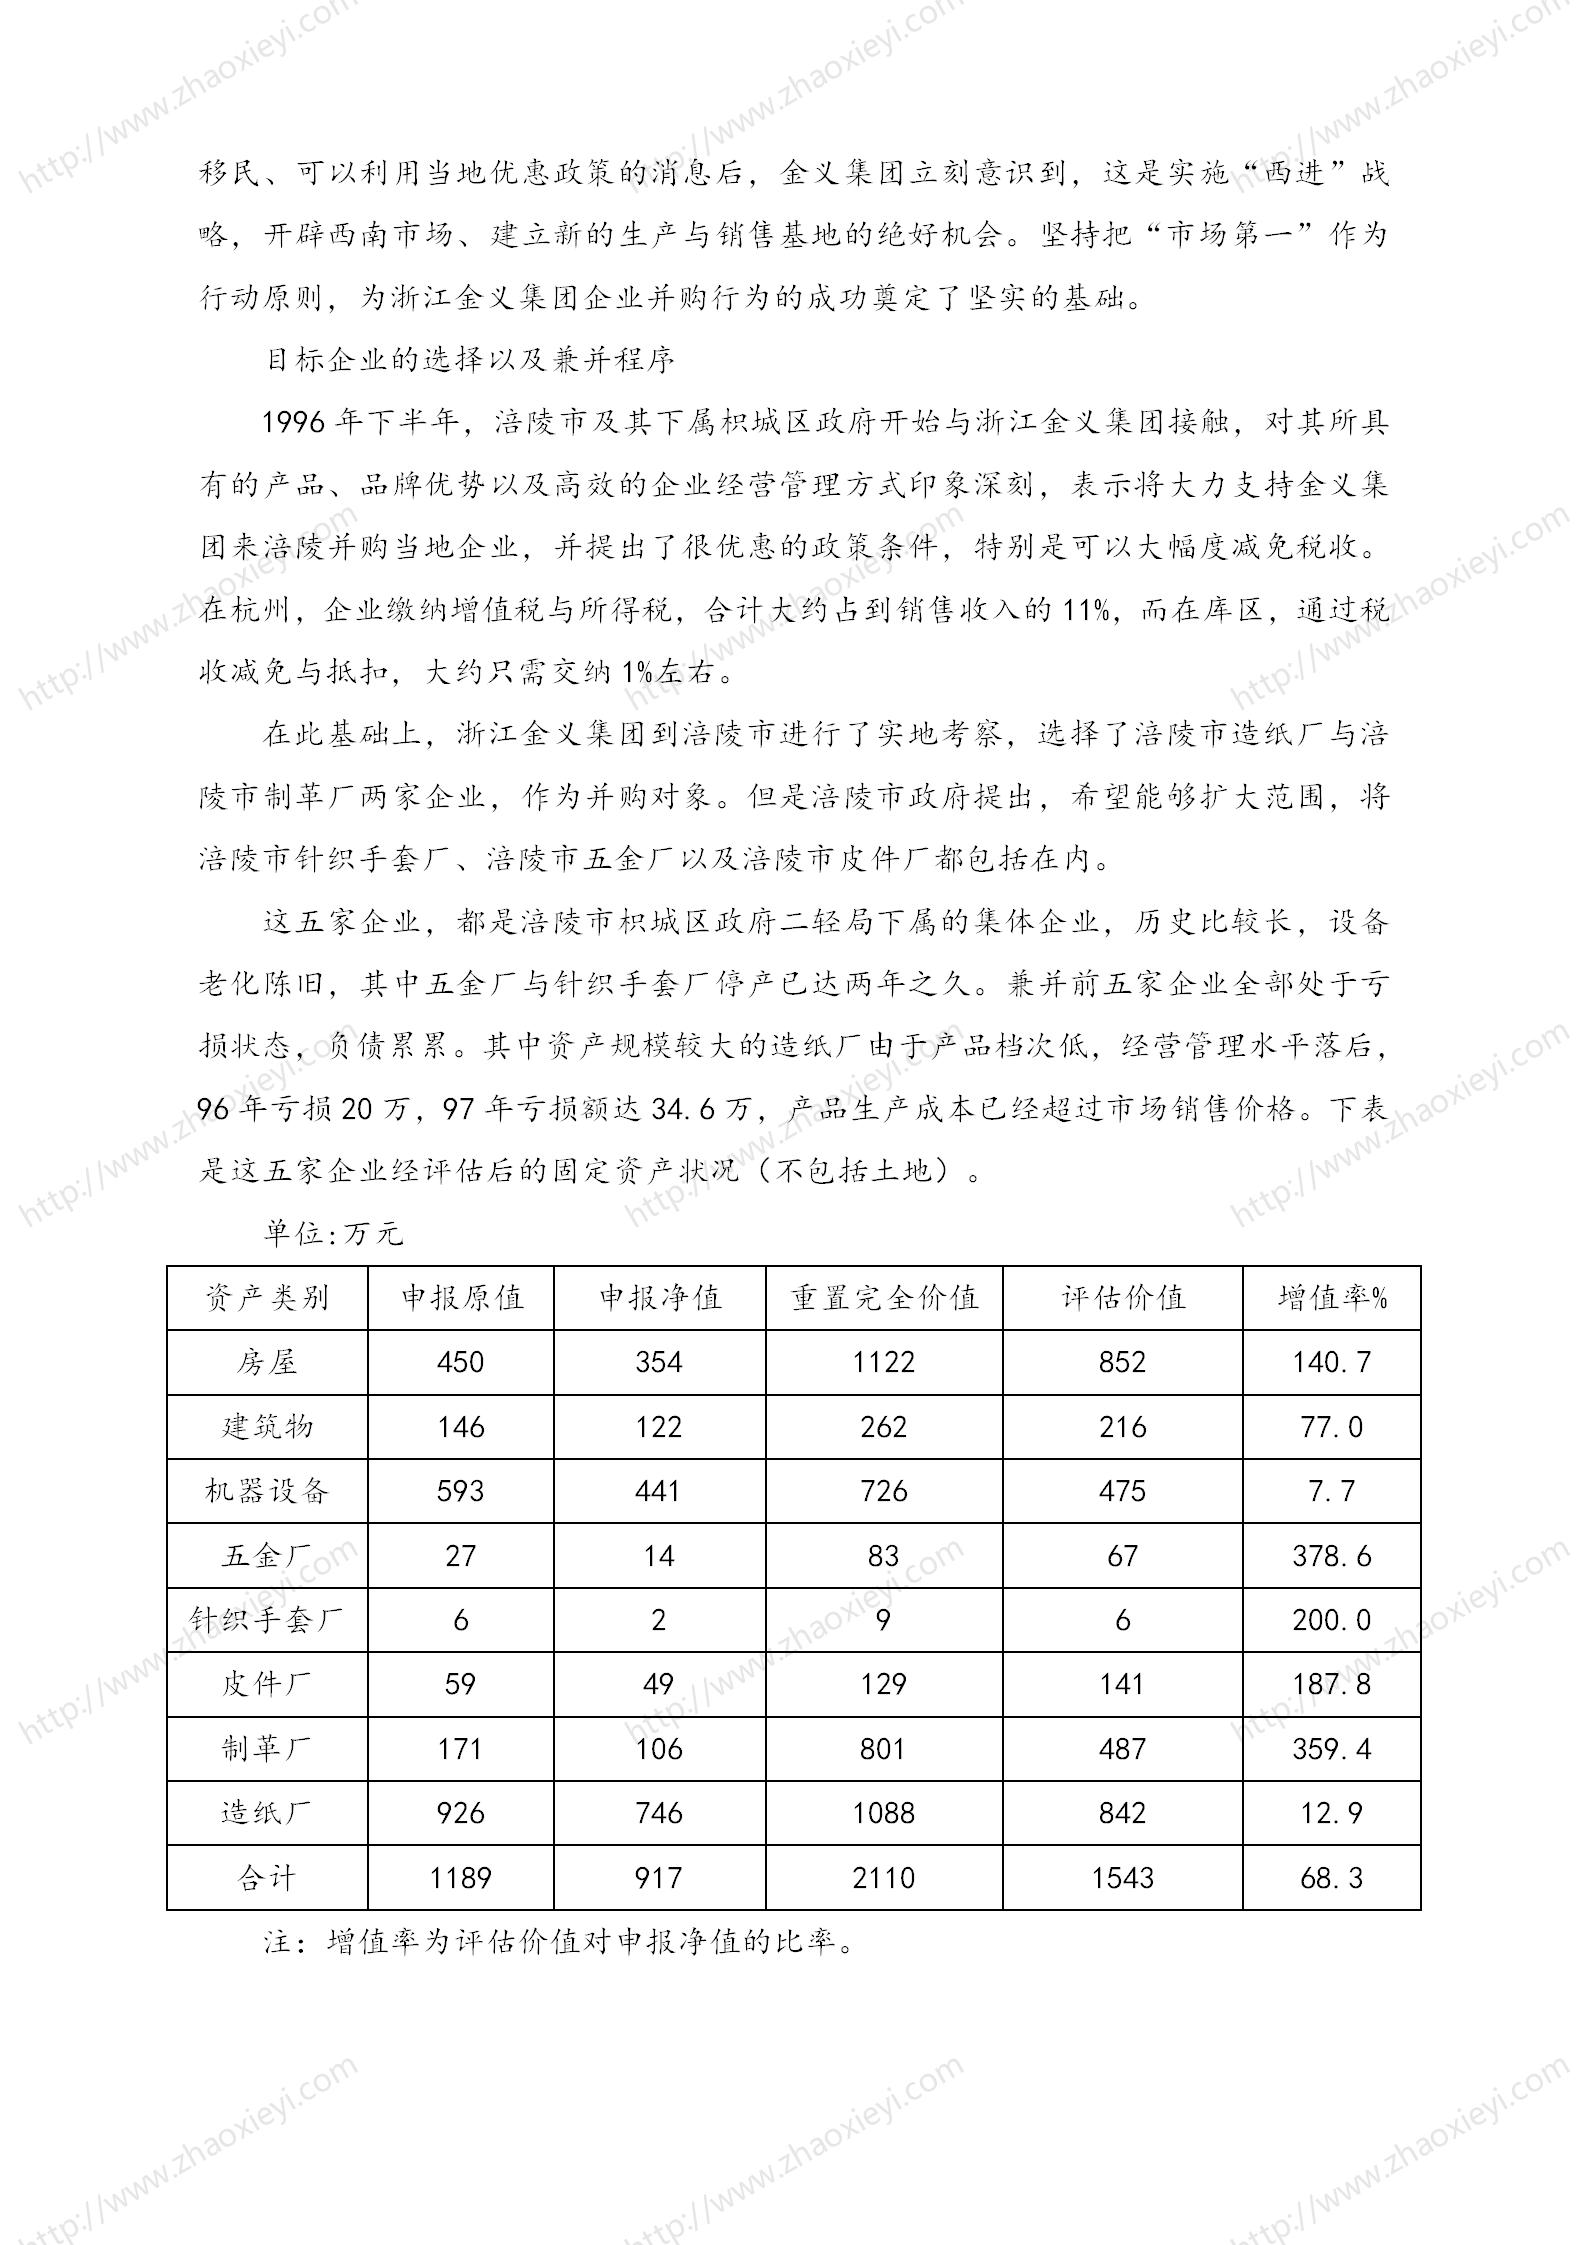 中国企业并购经典案例_125.jpg